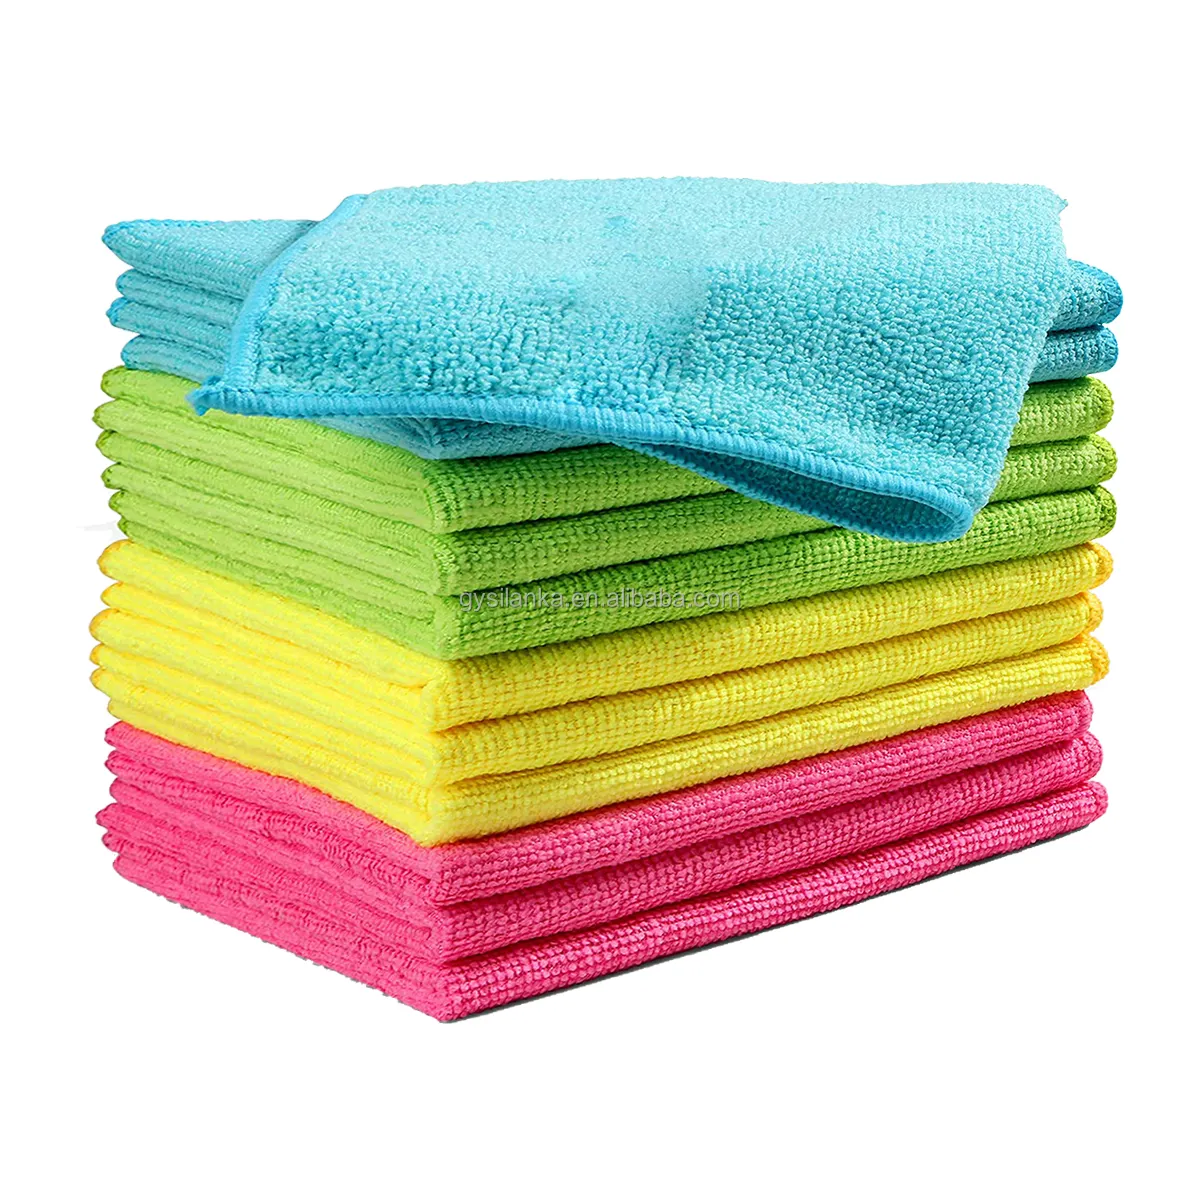 हल्के 220gsm 100% स्प्लिट माइक्रोफाइबर सफाई कपड़े माइक्रो फाइबर तौलिया निर्माता द्वारा बनाया गया माइक्रो फाइबर तौलिया